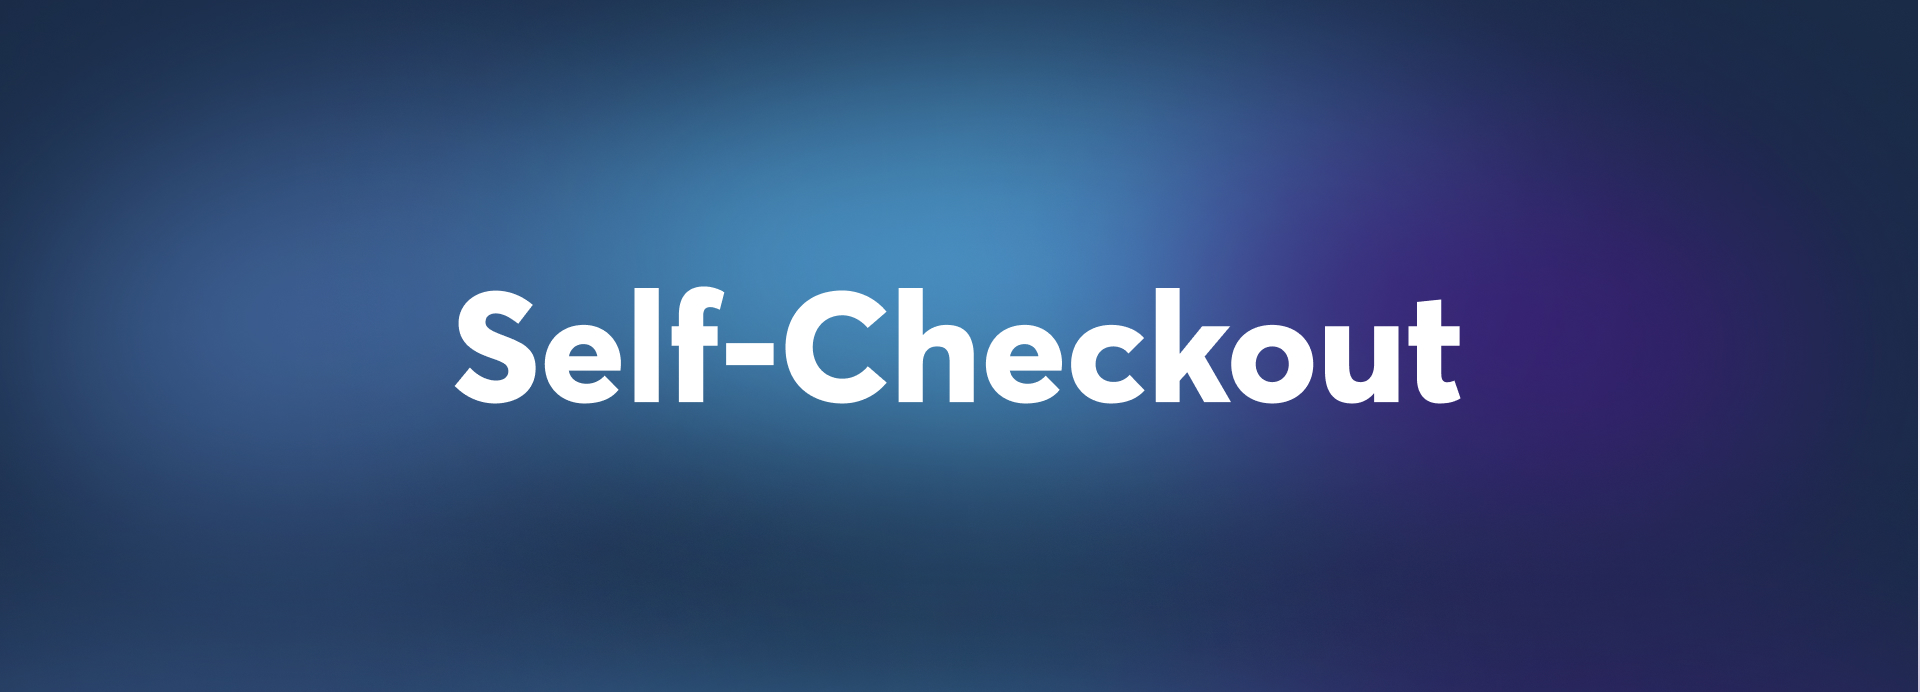 Self-Checkout-label